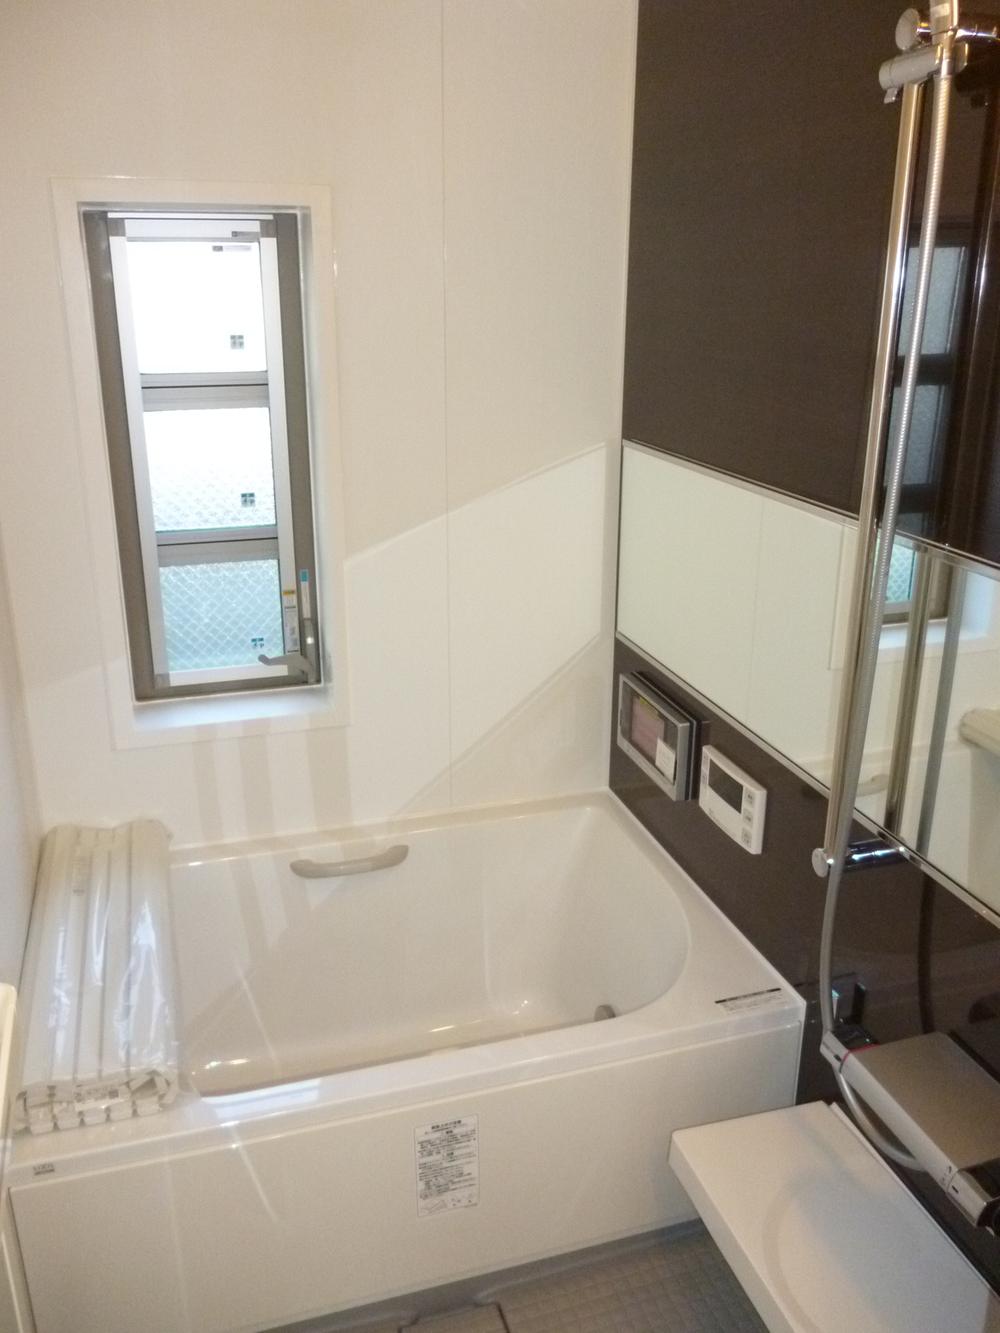 Bathroom. Bathroom color with TV, unit bus